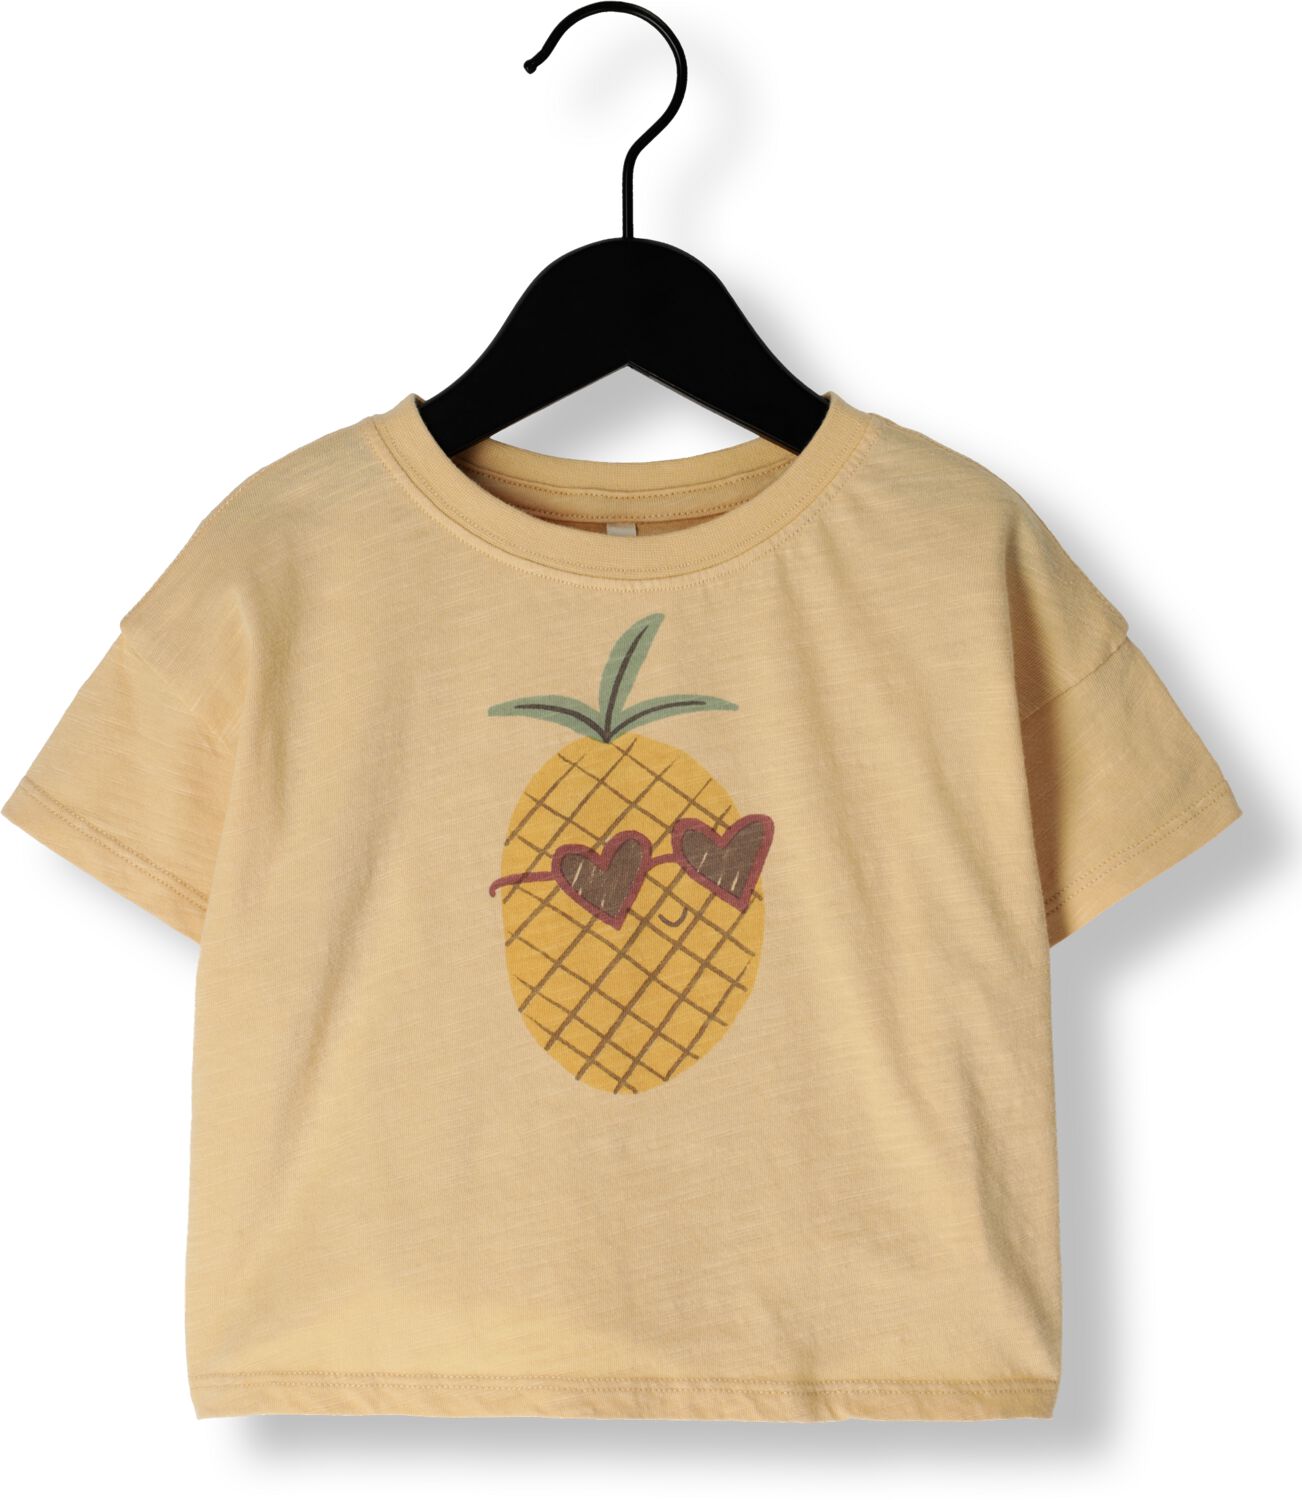 RYLEE + CRU Meisjes Tops & T-shirts Boxy Tee Pineapple Geel